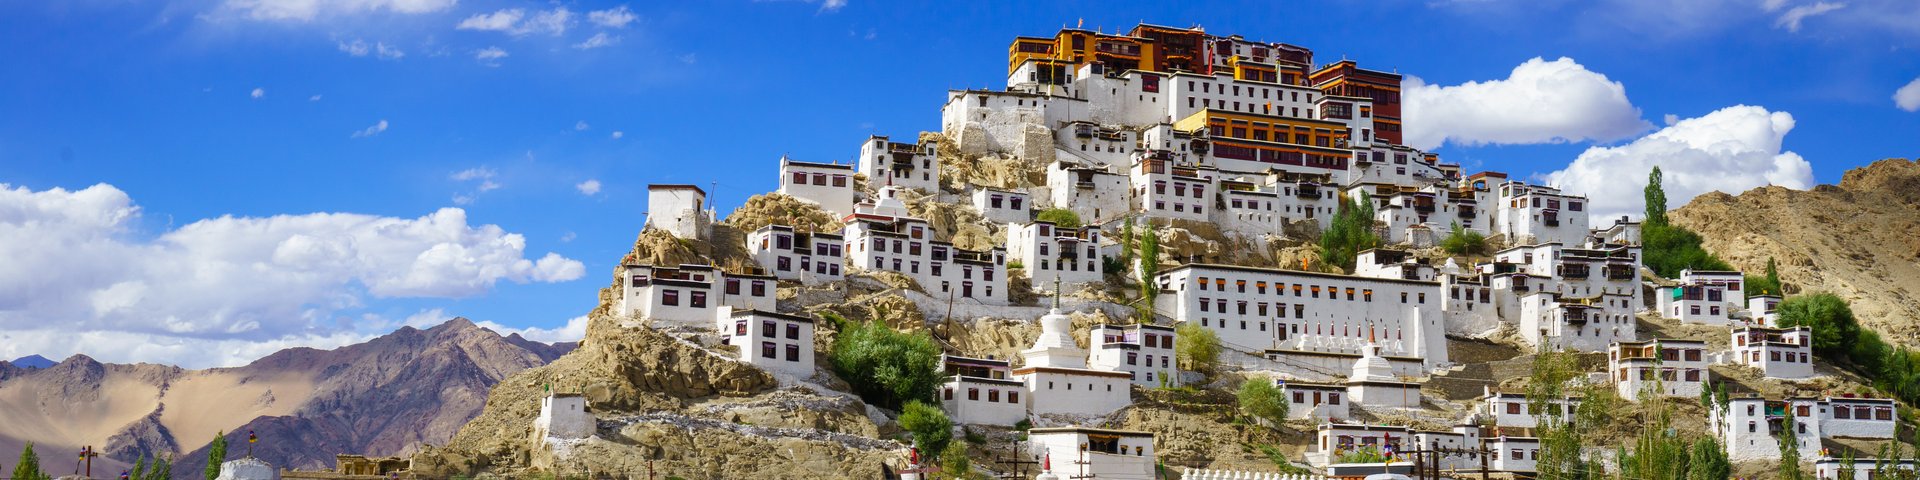 Blick auf das weitläufige Kloster Thiksey im indischen Ladakh